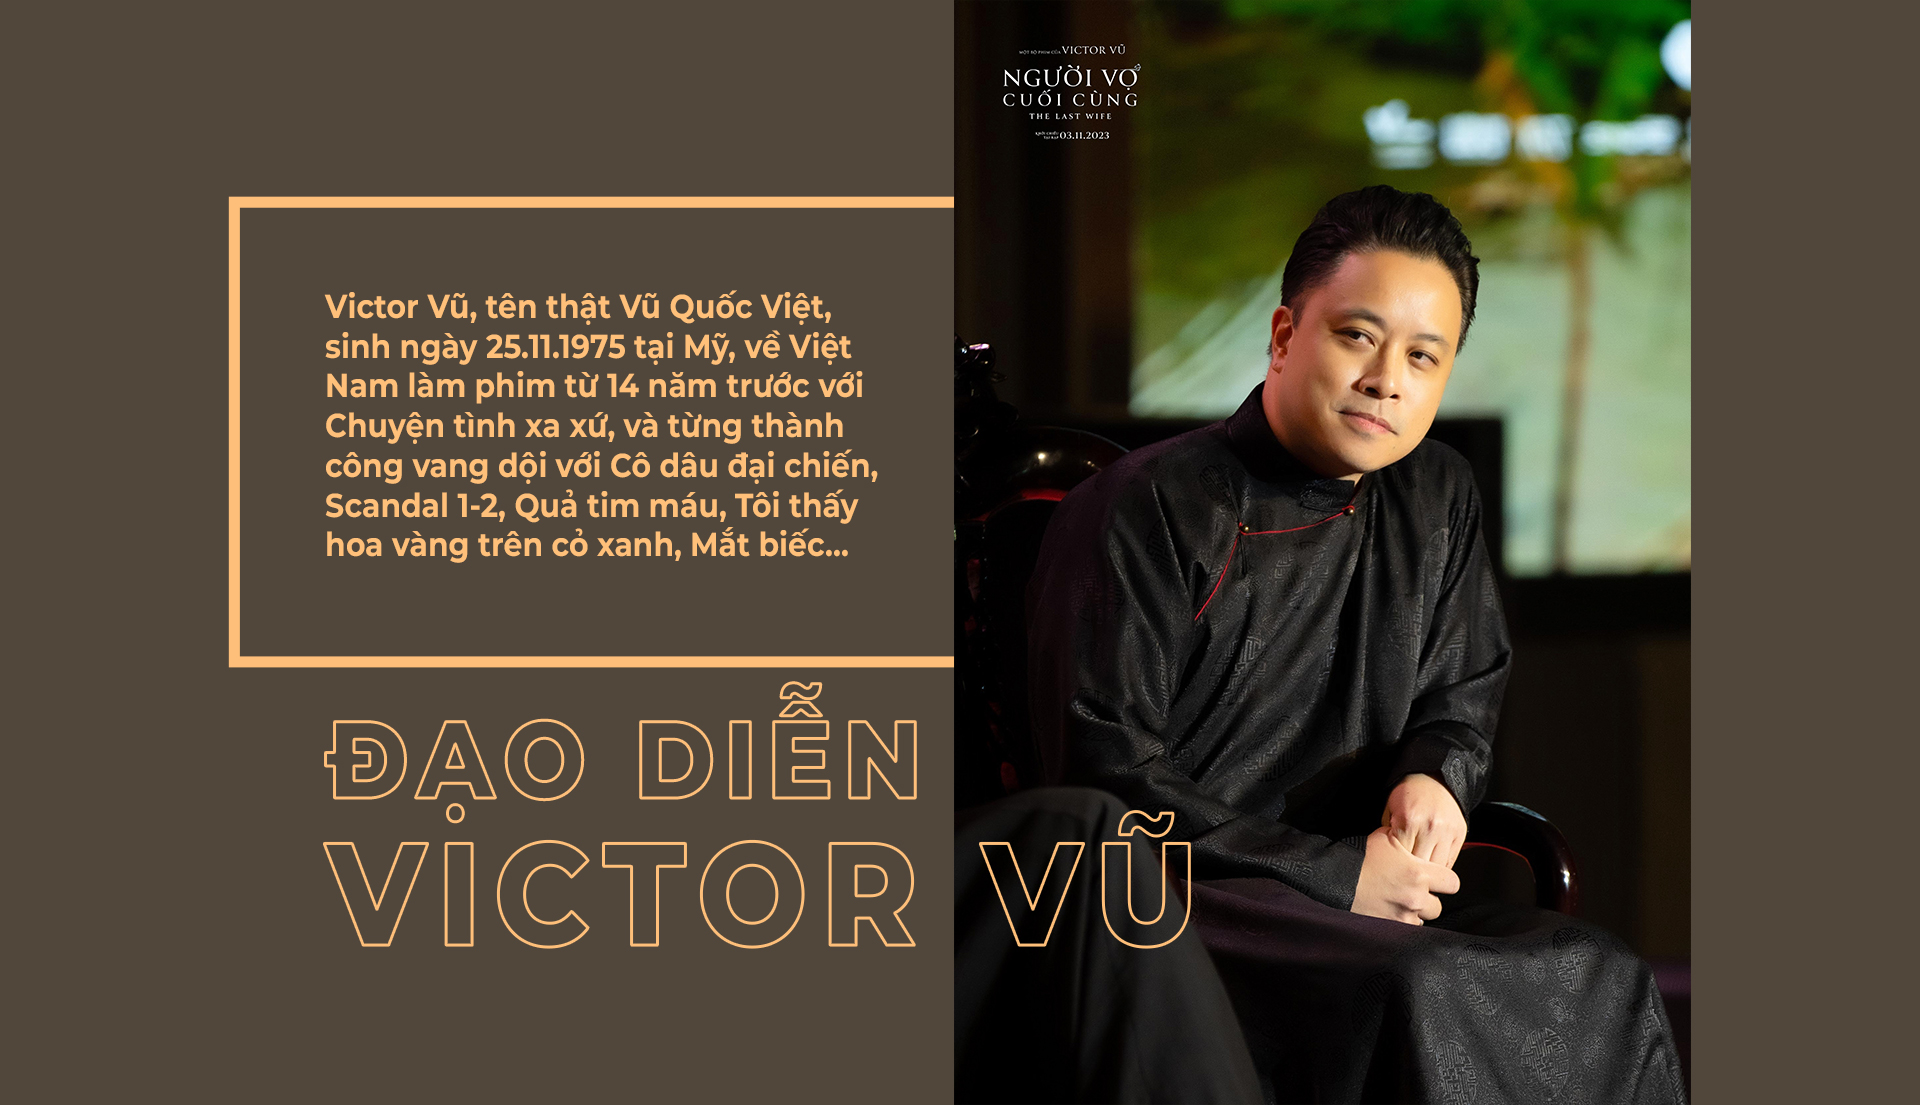 Đạo diễn Victor Vũ: “Tôi chỉ mới bắt đầu và sẽ làm nghề đến khi hết sức” - Ảnh 4.